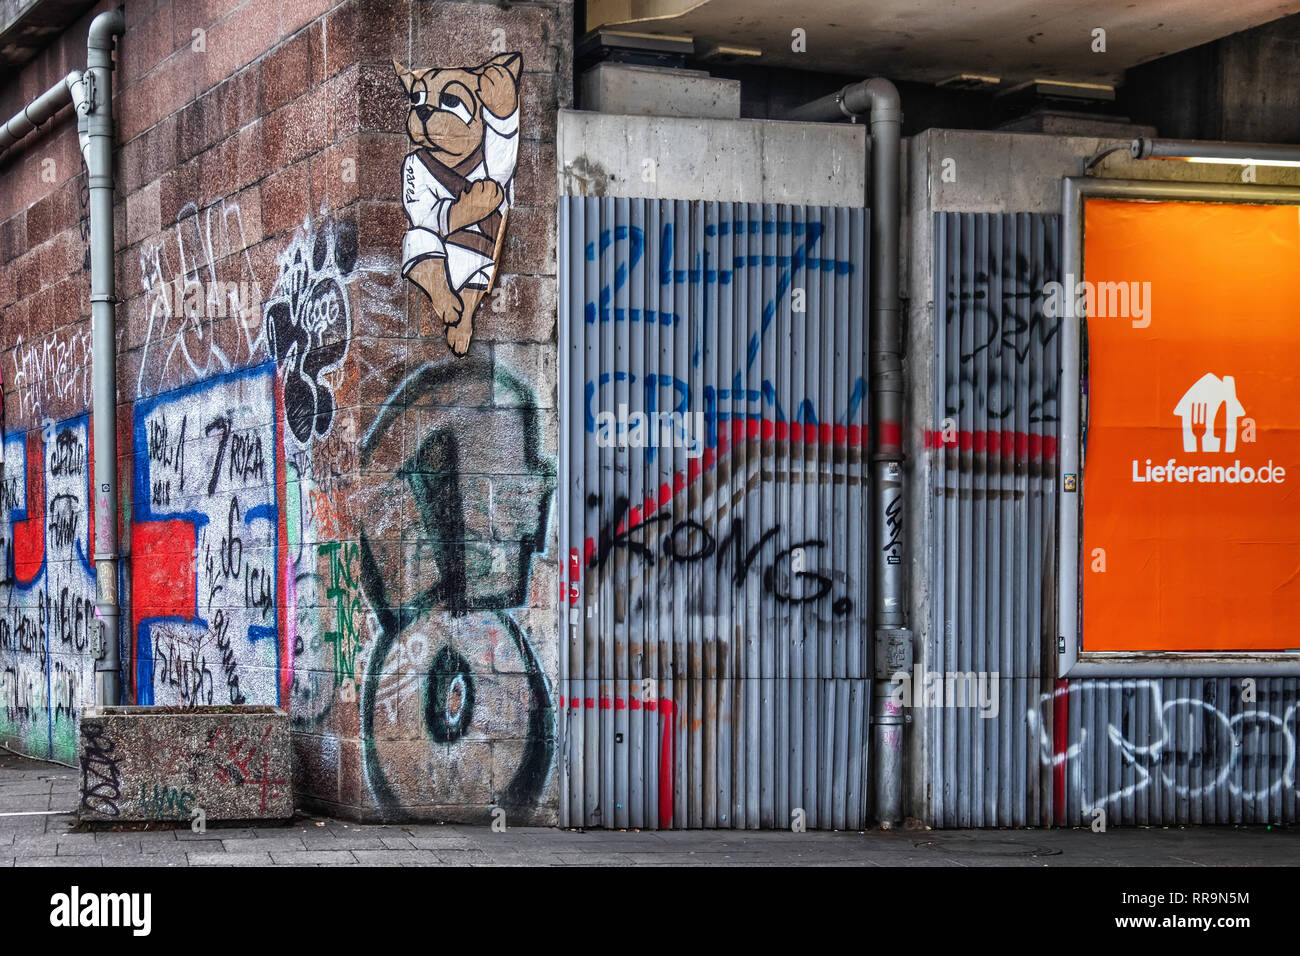 Mitte-Berlin. Eisenbahnviadukt mit Graffiti, Street Art, Rohre und Lieferando Werbung Stockfoto